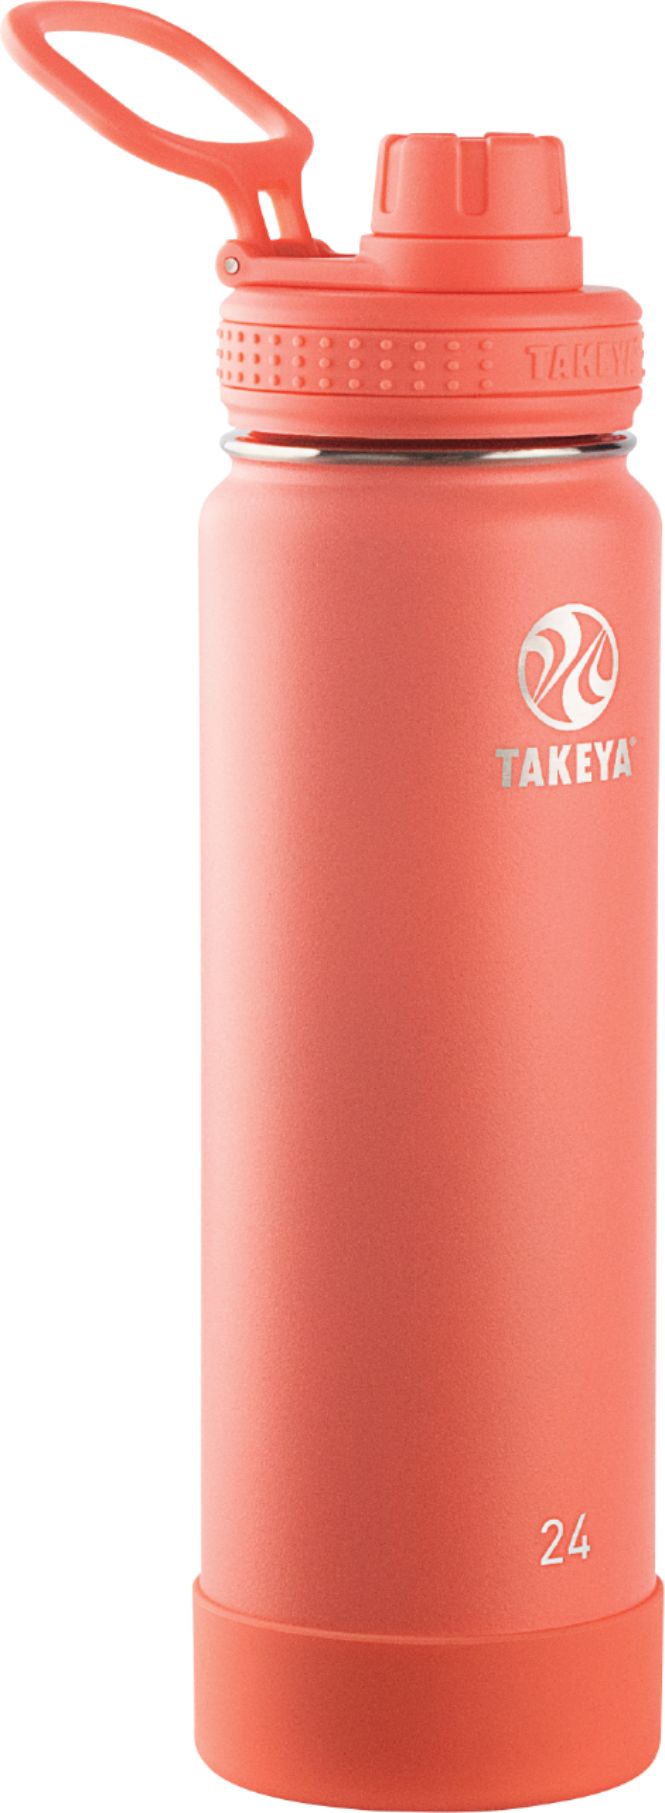 Angle View: Takeya - Actives 24oz Spout Bottle - Coral